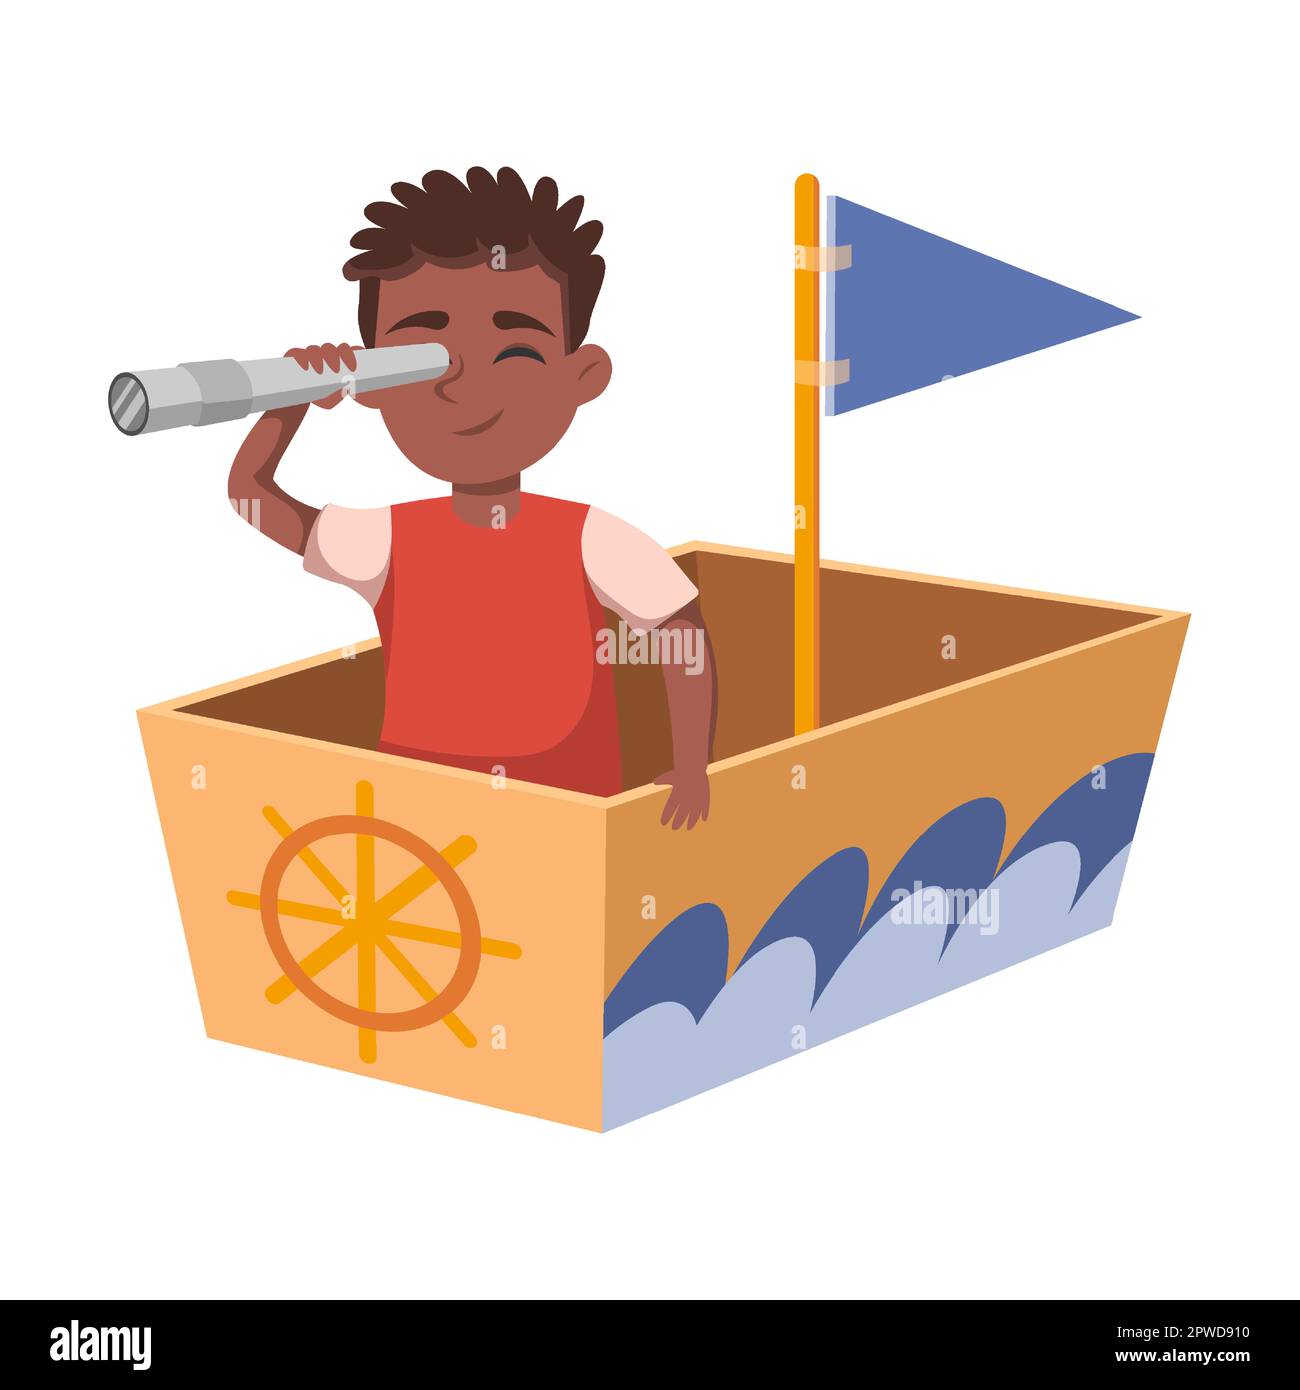 Enfant avec navire de costume en bois et pirate en carton boxe illustration vectorielle. Dessin animé créatif enfant dans un bateau en carton isolé sur fond blanc Illustration de Vecteur